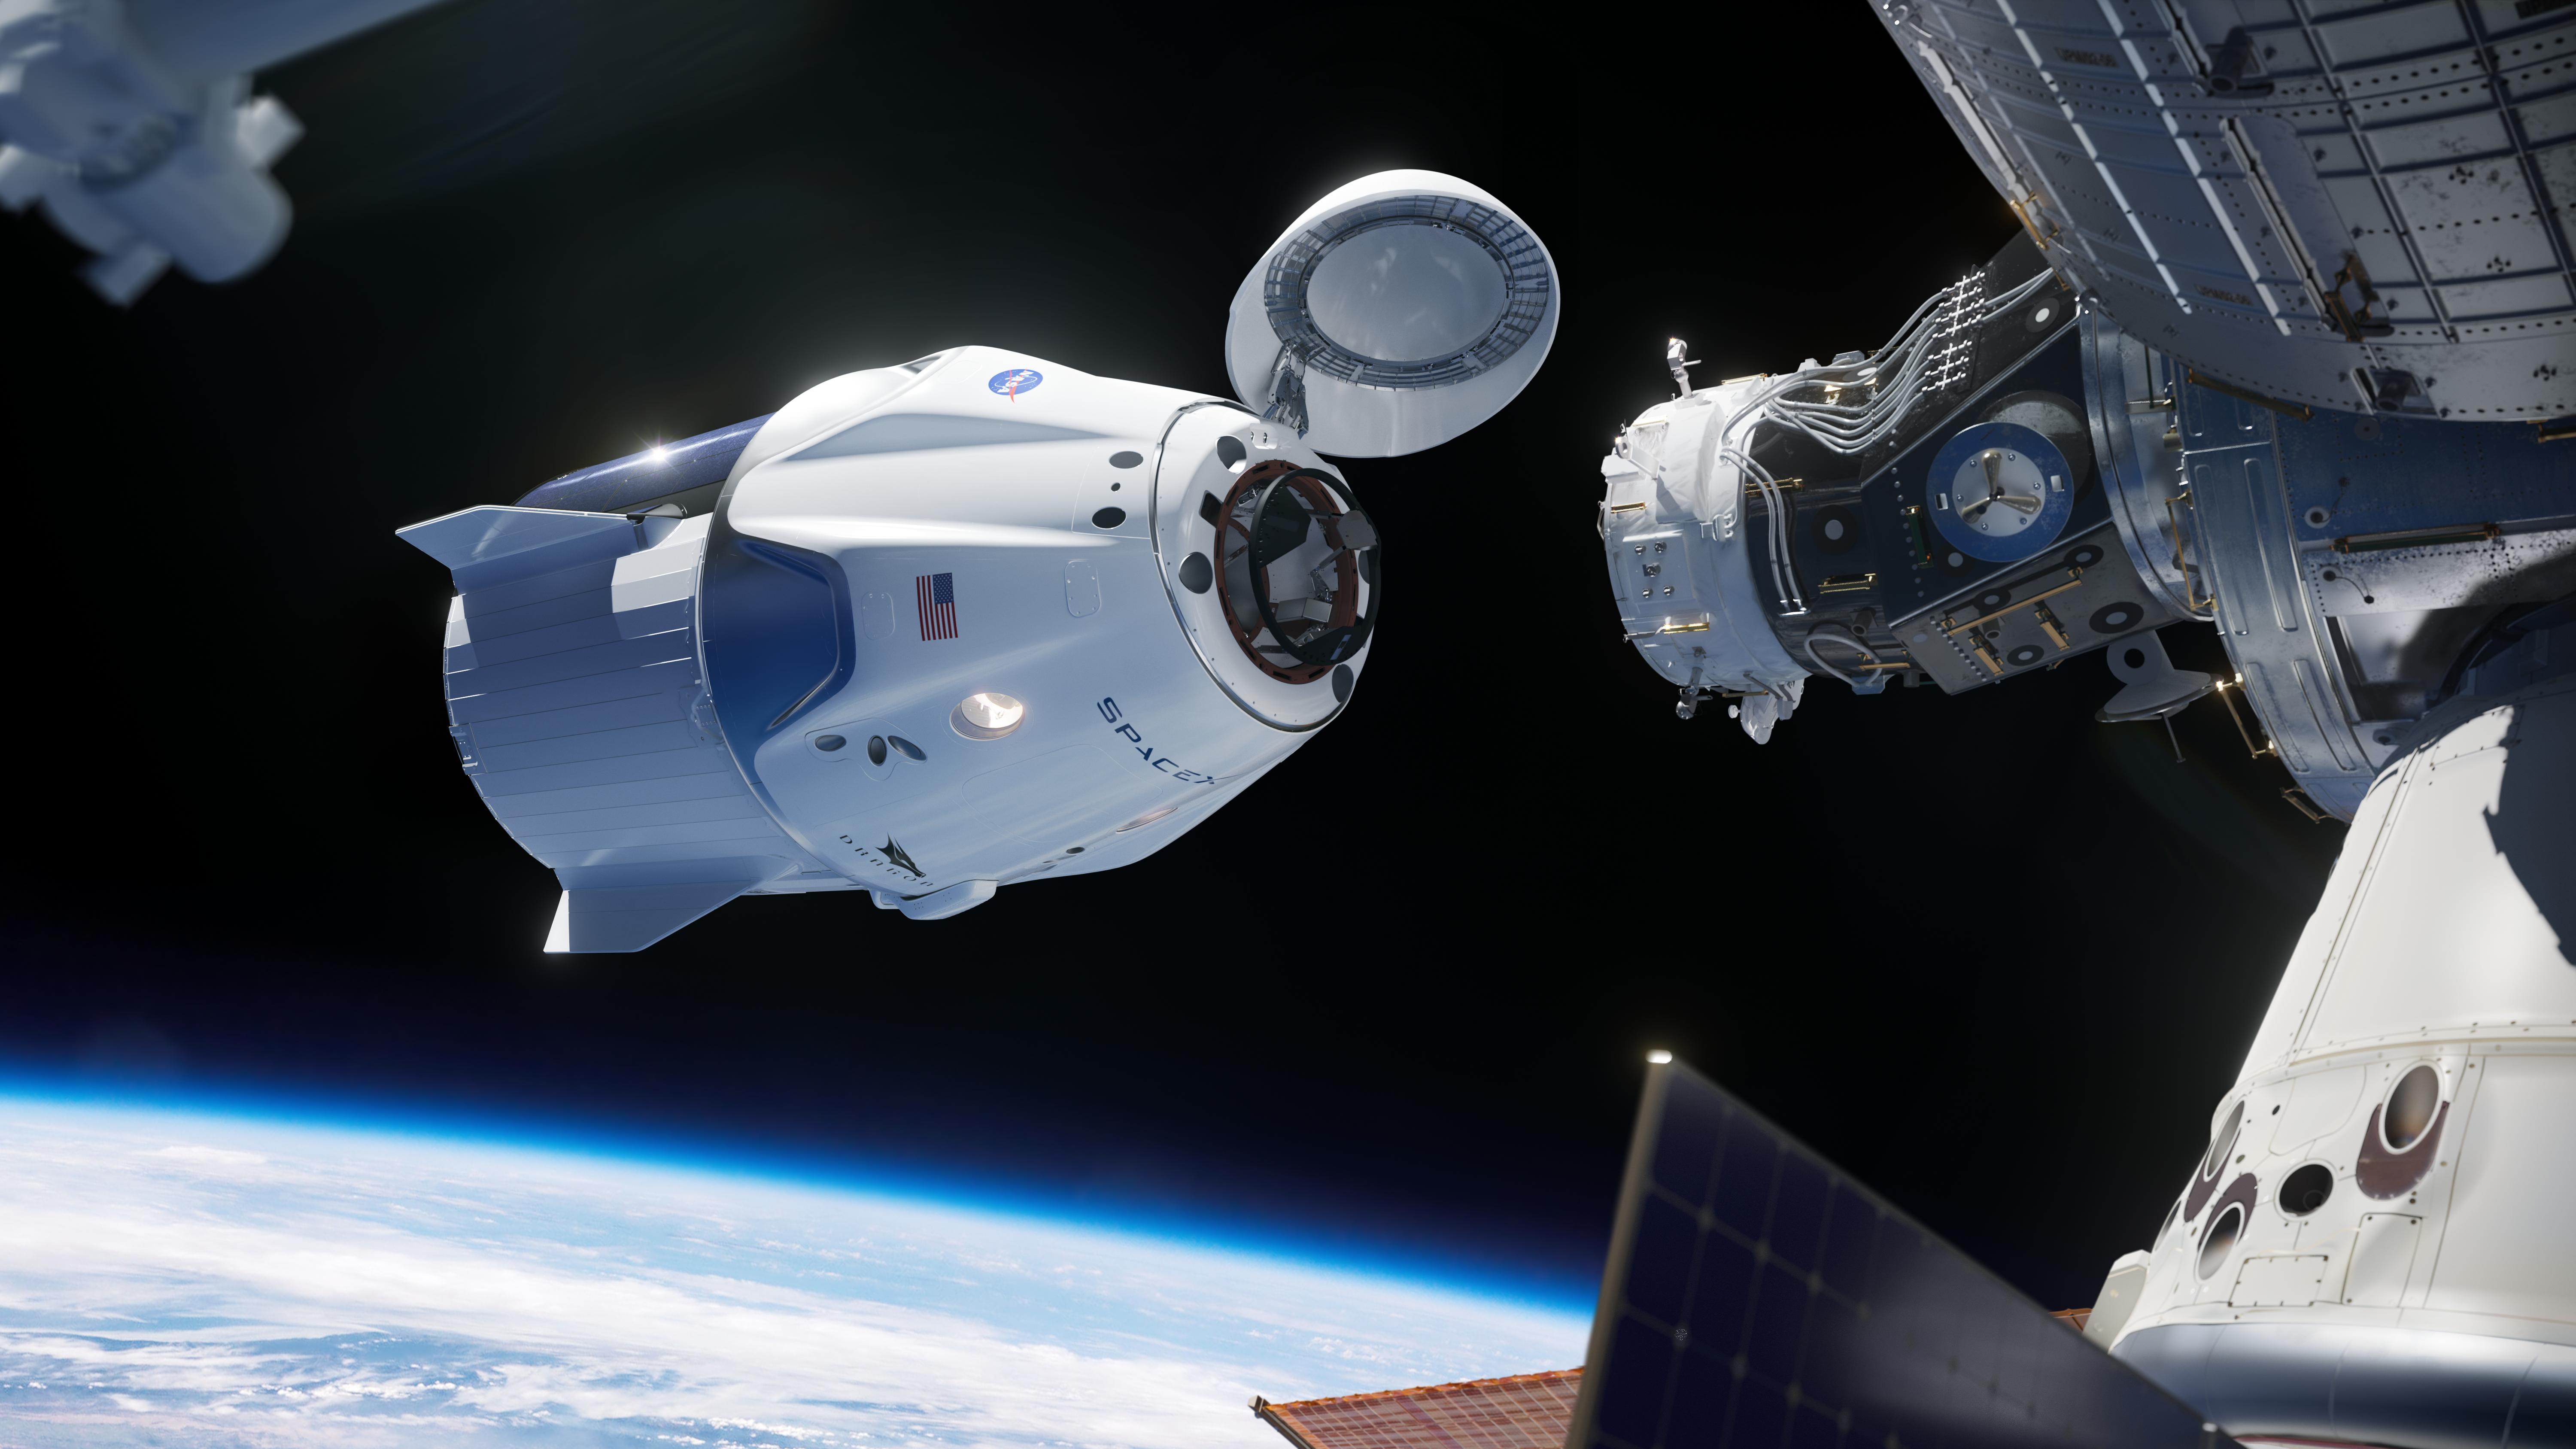 Компания планирует создать до 2035 года восемь спутников связи «Ямал» и шесть аппаратов дистанционного зондирования «Смотр» фото: ©ru.wikipedia.org/NASA/SpaceX